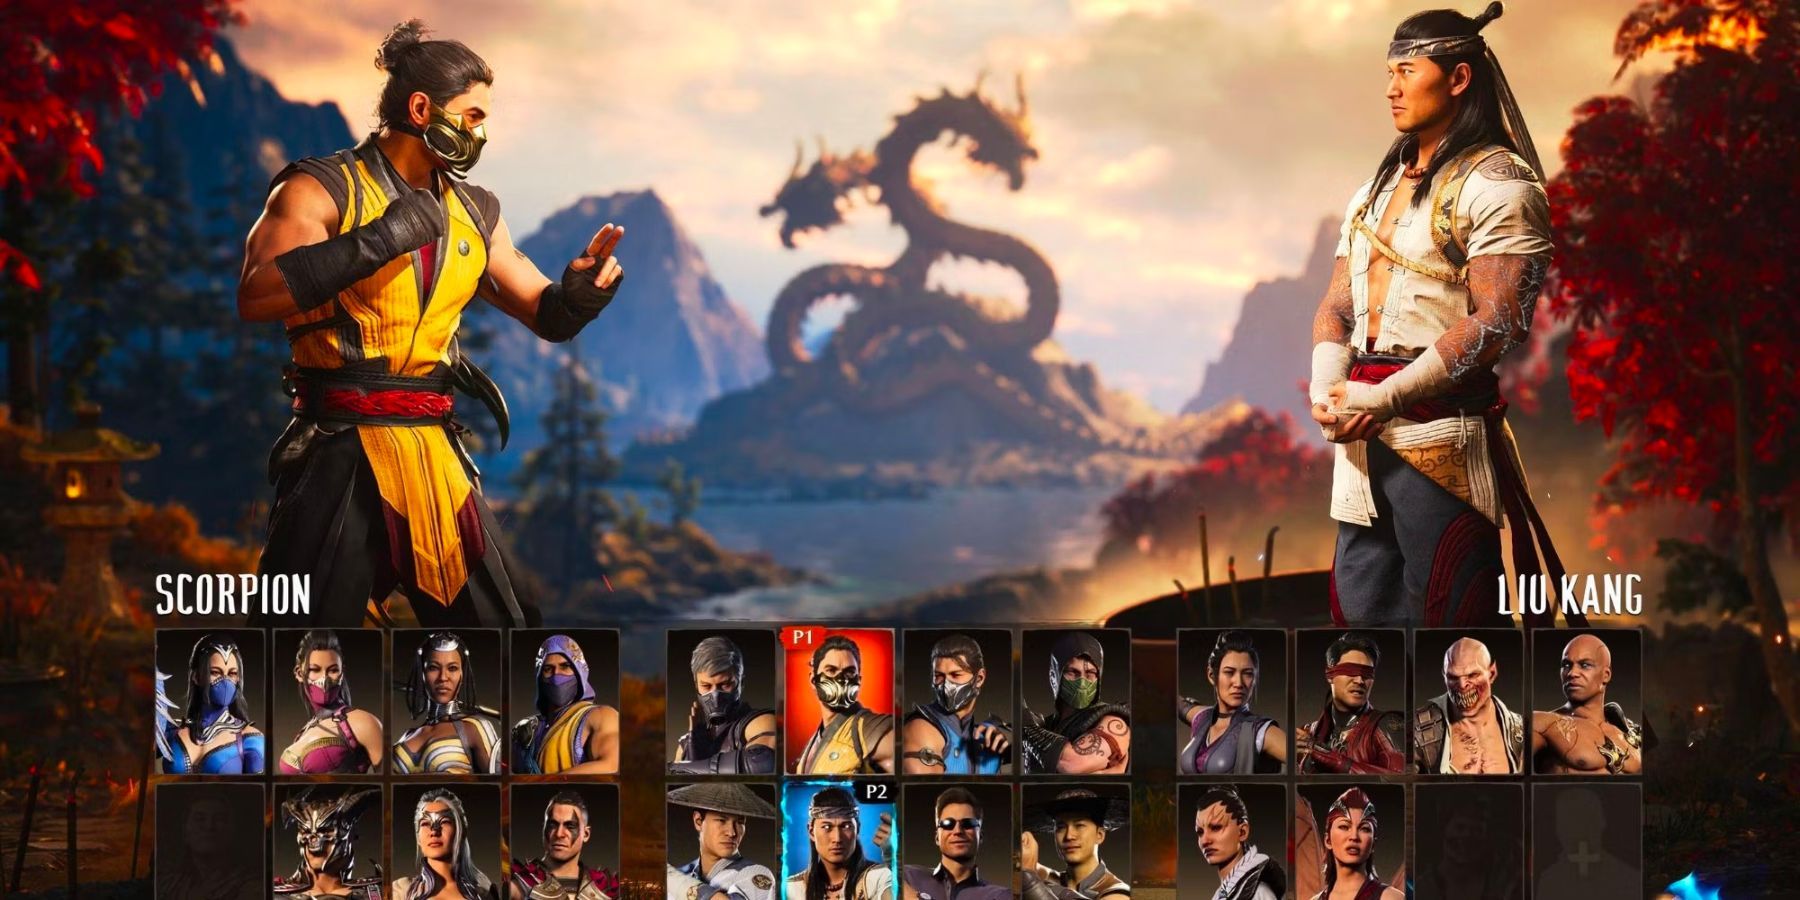 Notable Mortal Kombat Characters Still Missing in Liu Kang's New Era